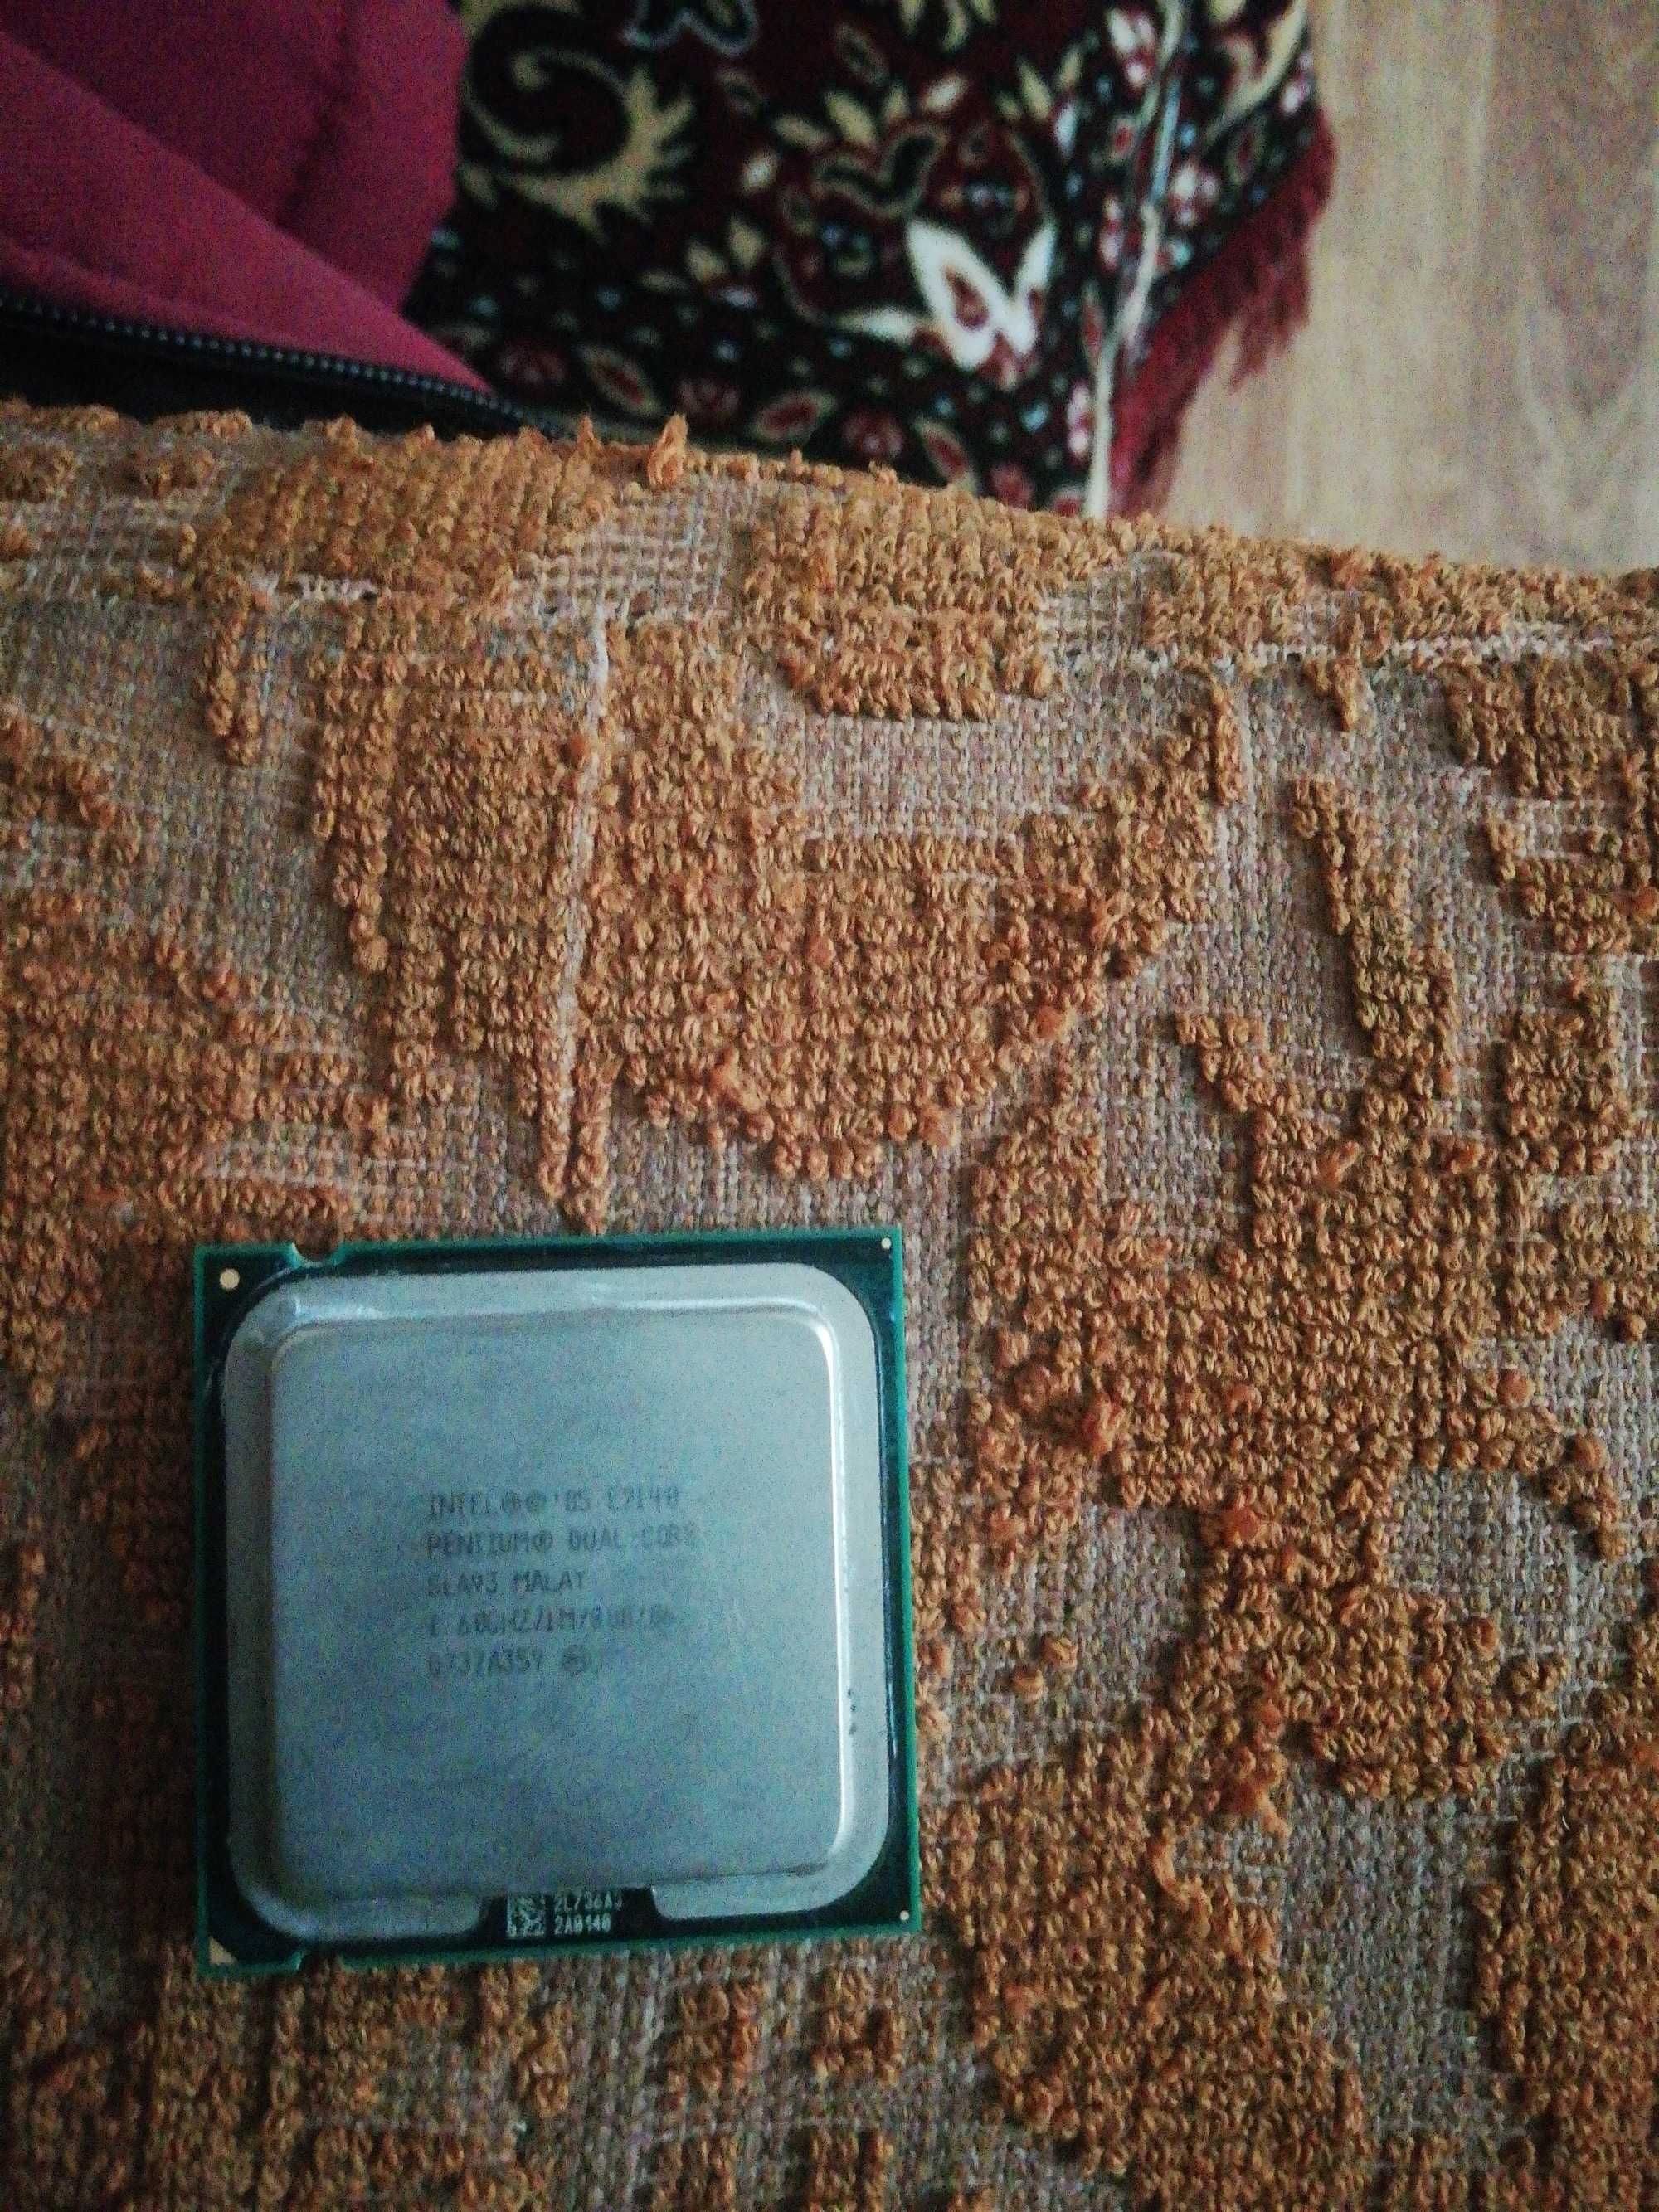 Procesor dual-cote Pentium. Intel E2140.